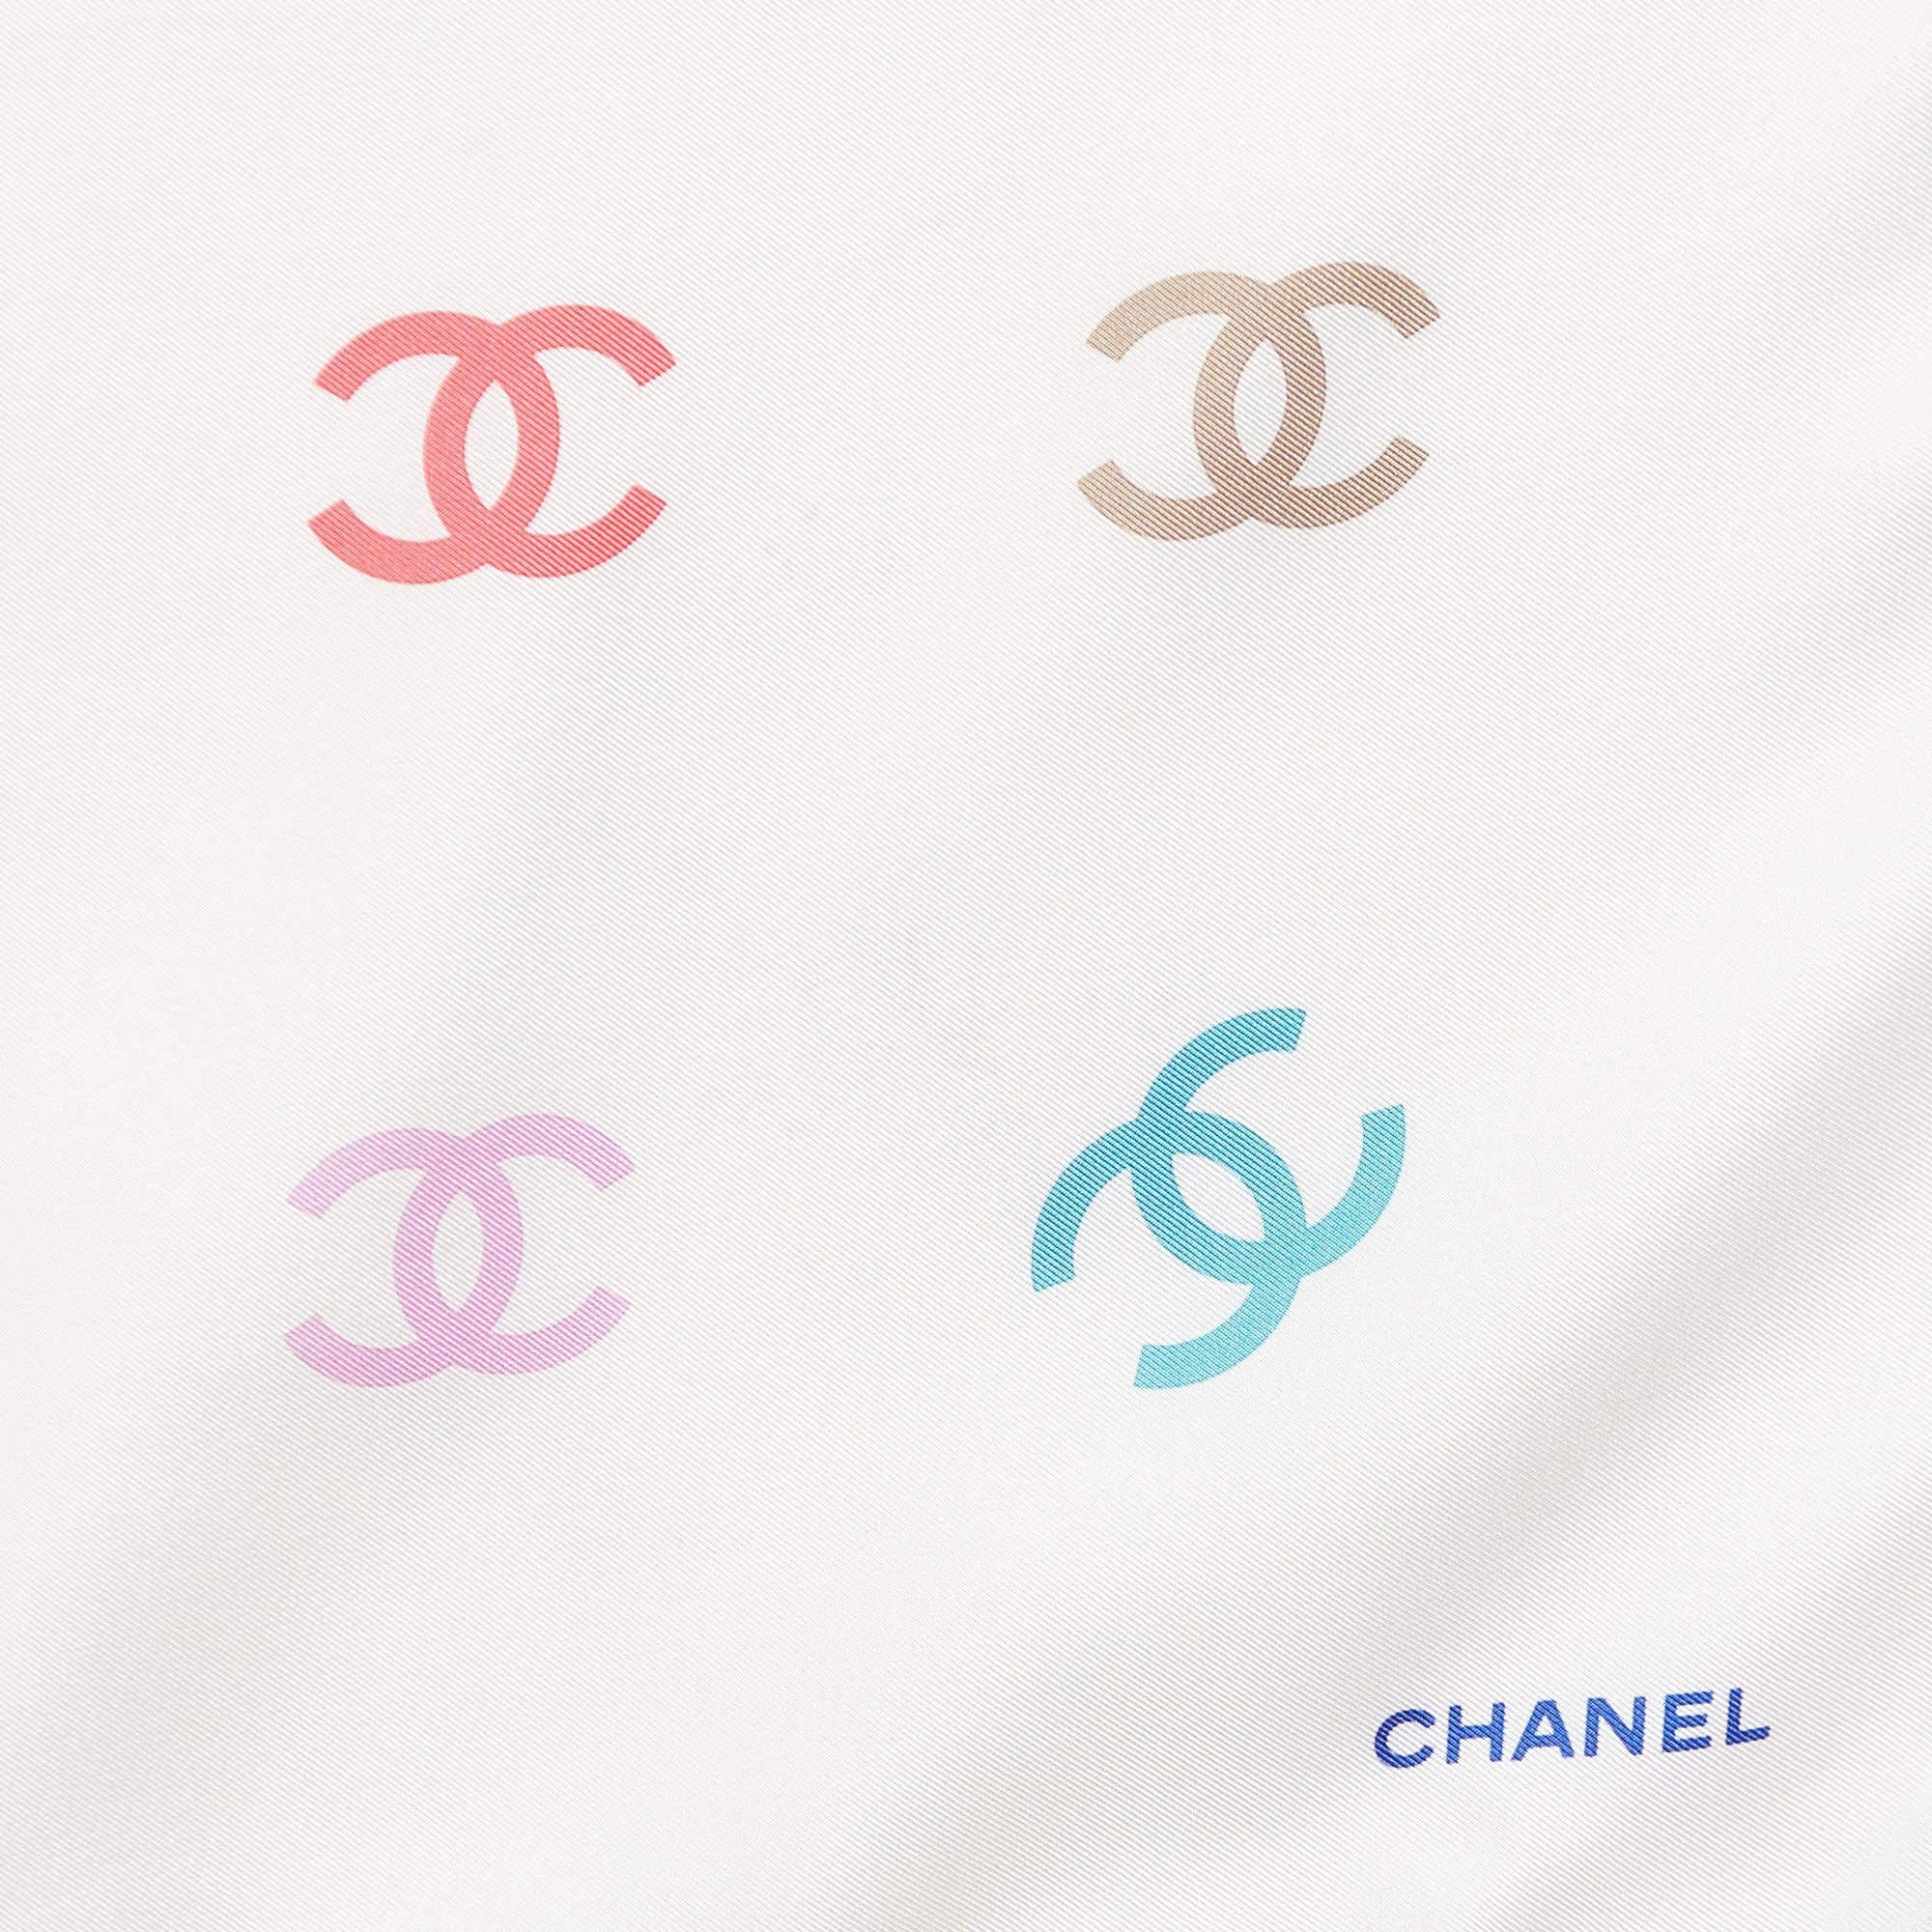 La ponctuation parfaite de votre look élégant sera ce foulard Chanel ! Il a été cousu à l'aide de matières douces dans une teinte polyvalente et orné d'un accent CC pour une touche de signature. Enroulez-le autour de votre cou pour l'accessoiriser